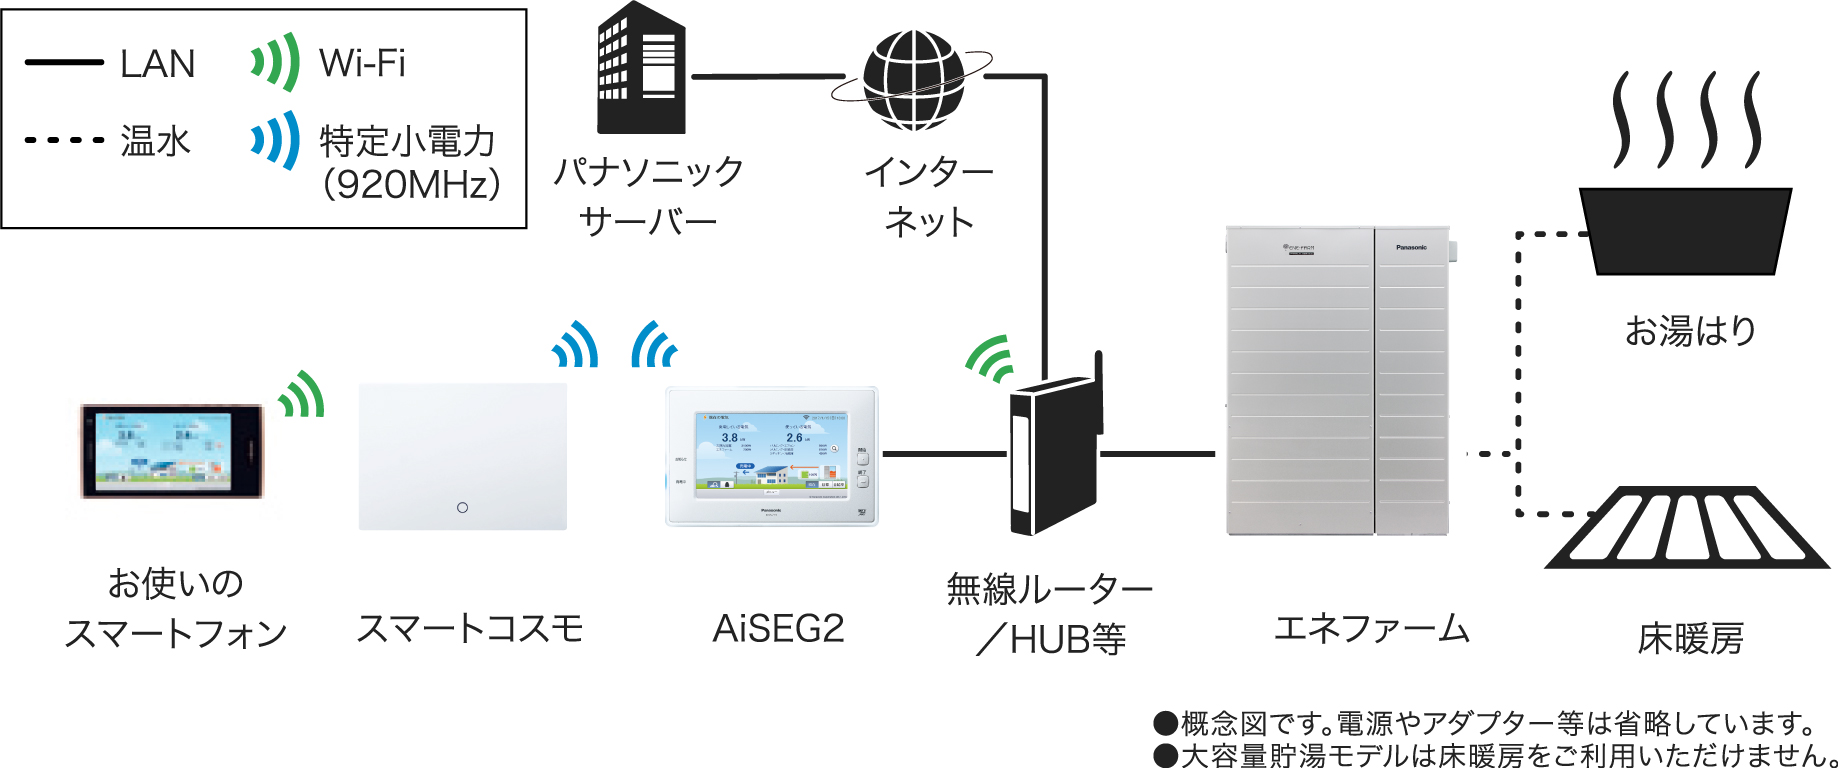 HOME IoT（AiSEG2）とエネファーム/おふろ/床暖房の接続イメージ：エネファーム、およびAiSEG2と無線ルーター/HUB間はLAN接続、無線ルーター/HUBとパナソニックサーバー間はLANによるインターネット接続、AiSEG2とスマートコスモ間は特定小電力無線(920MHz)、スマートフォンと無線ルーター間はWi-Fi接続、エネファームとおふろ・床暖房間は温水